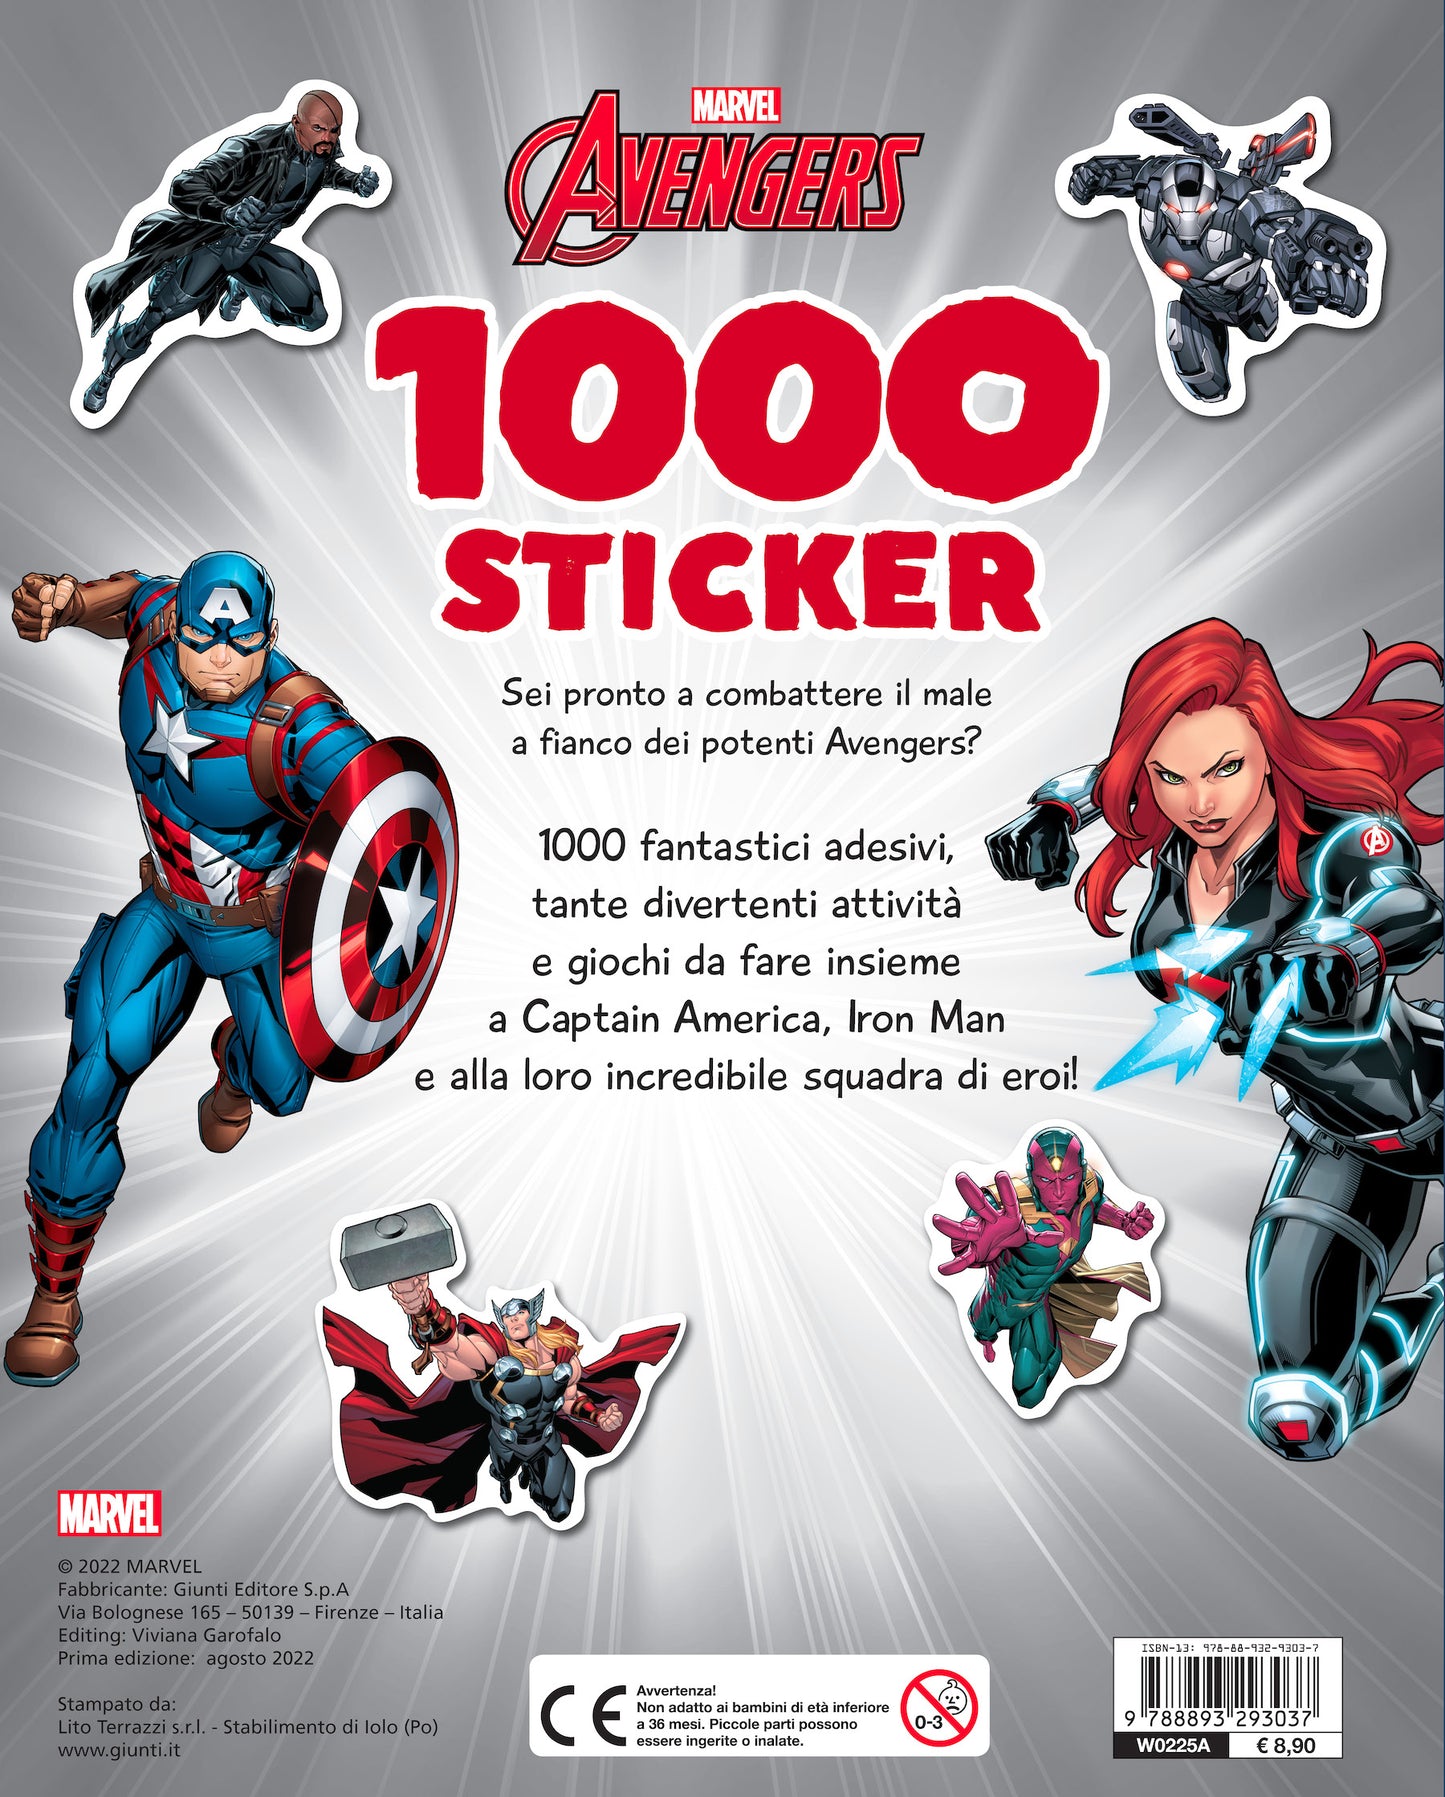 1000 Sticker Marvel Avengers. Tanti giochi e attività